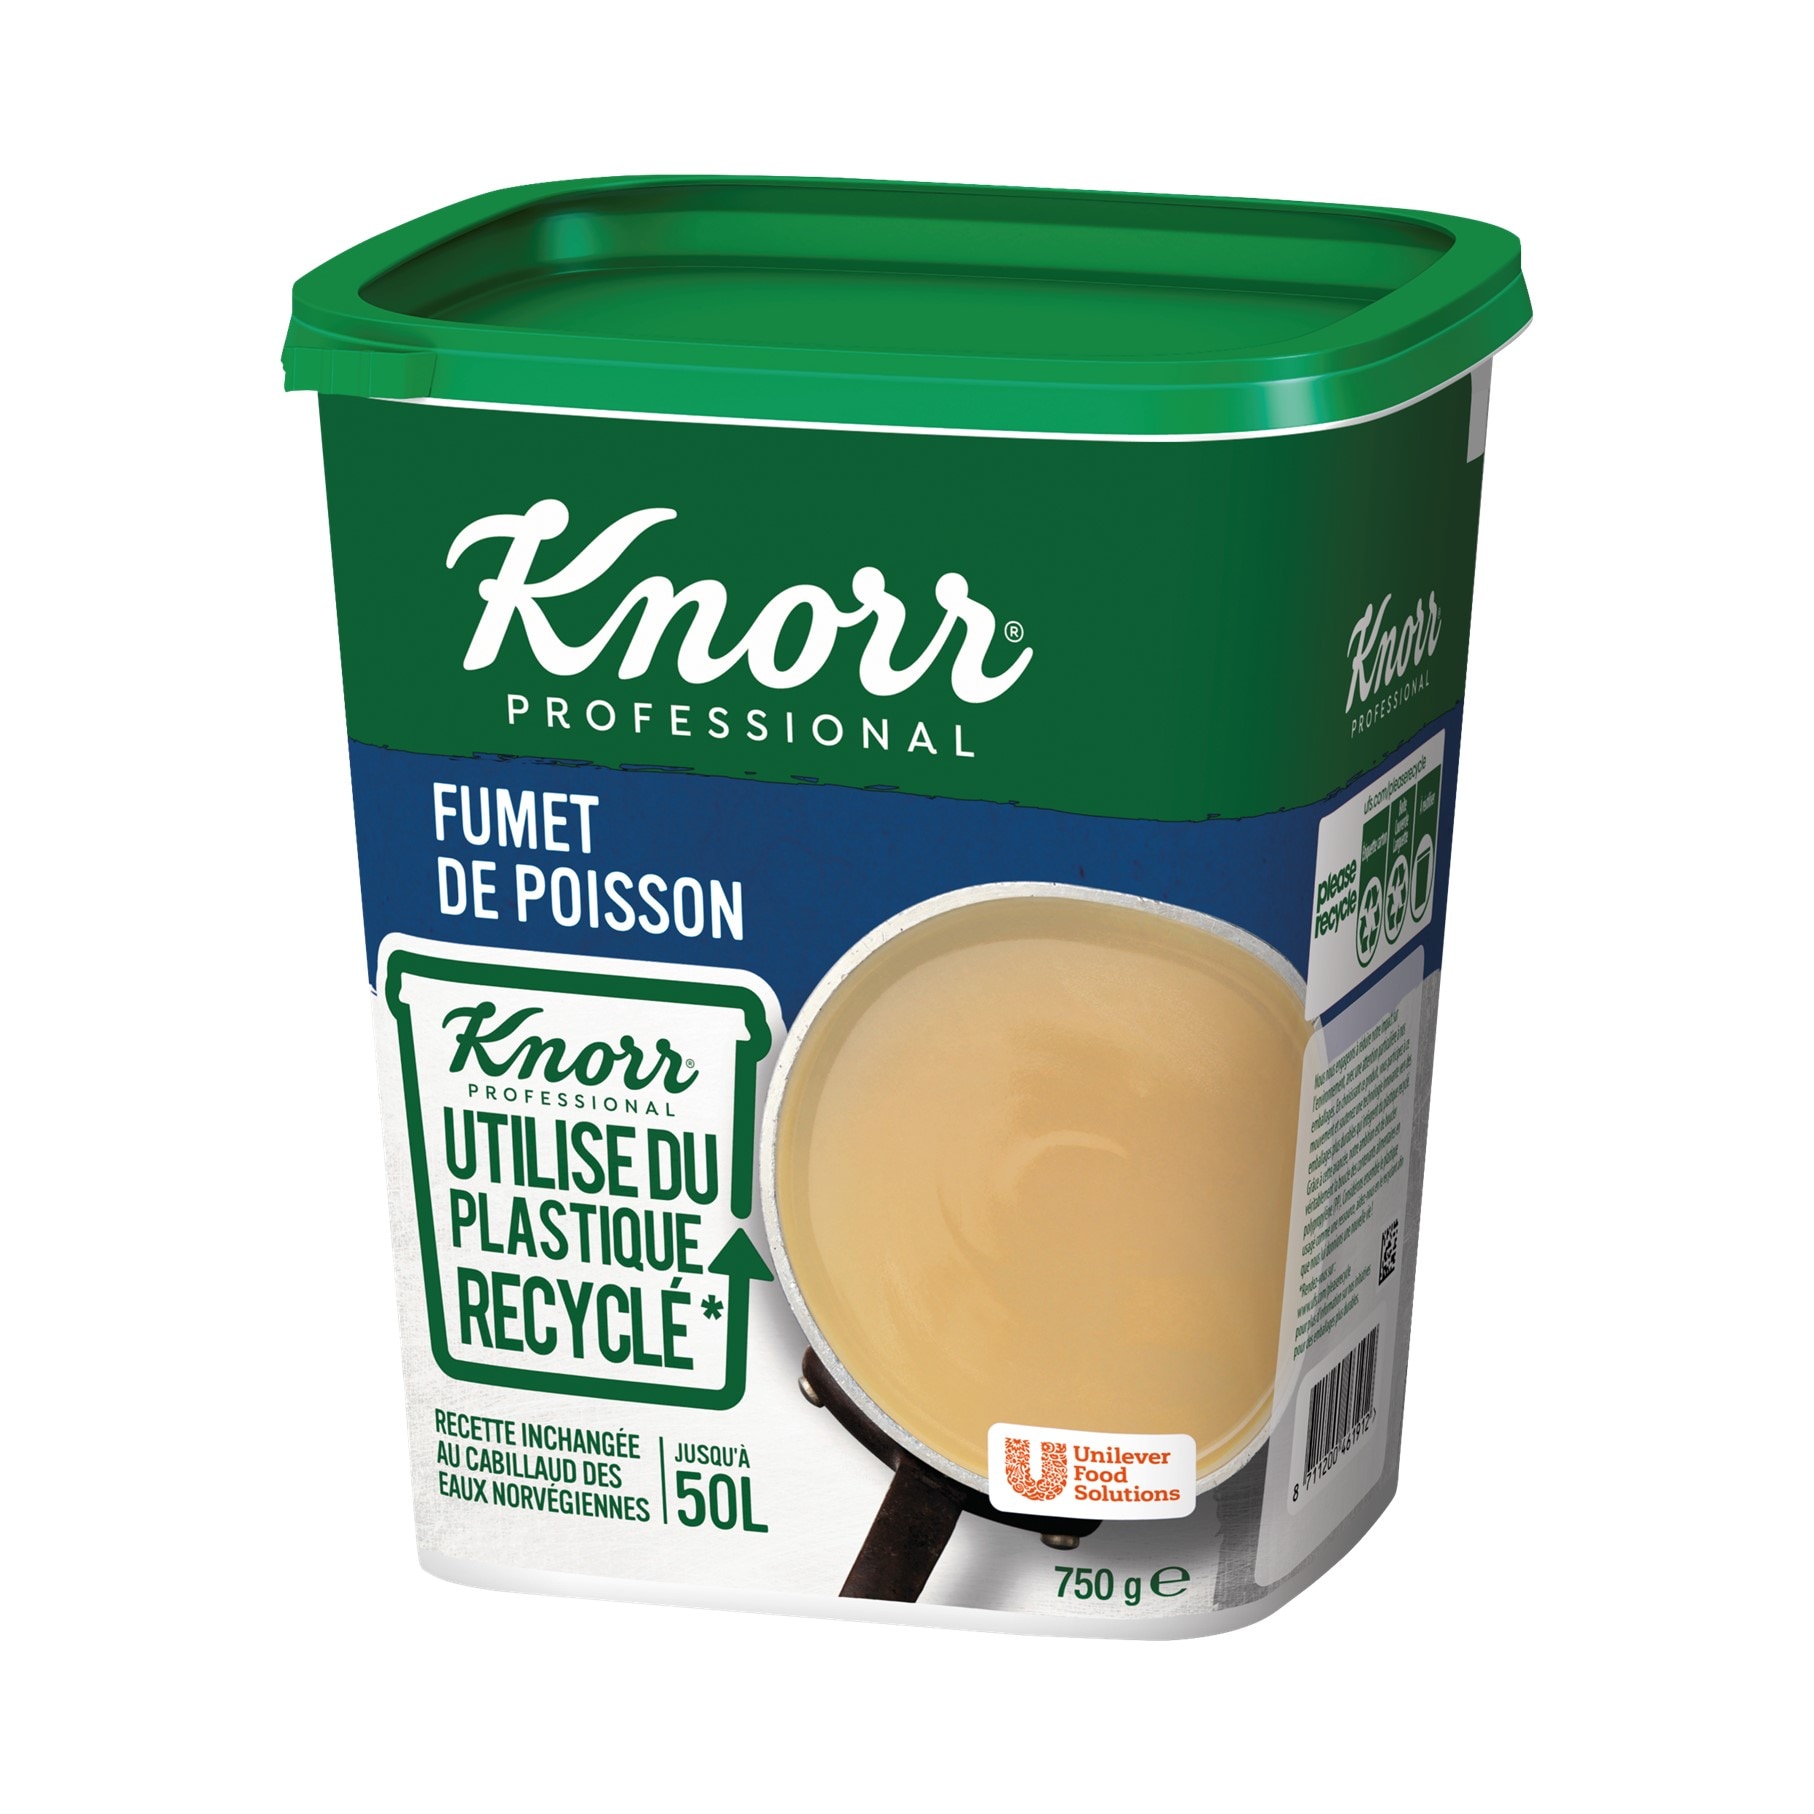 Knorr Fumet de Poisson Déshydraté Boîte 750g jusqu'à 50L - Le Fumet de Poisson Knorr apporte finesse et équilibre à vos sauces sans les dénaturer !